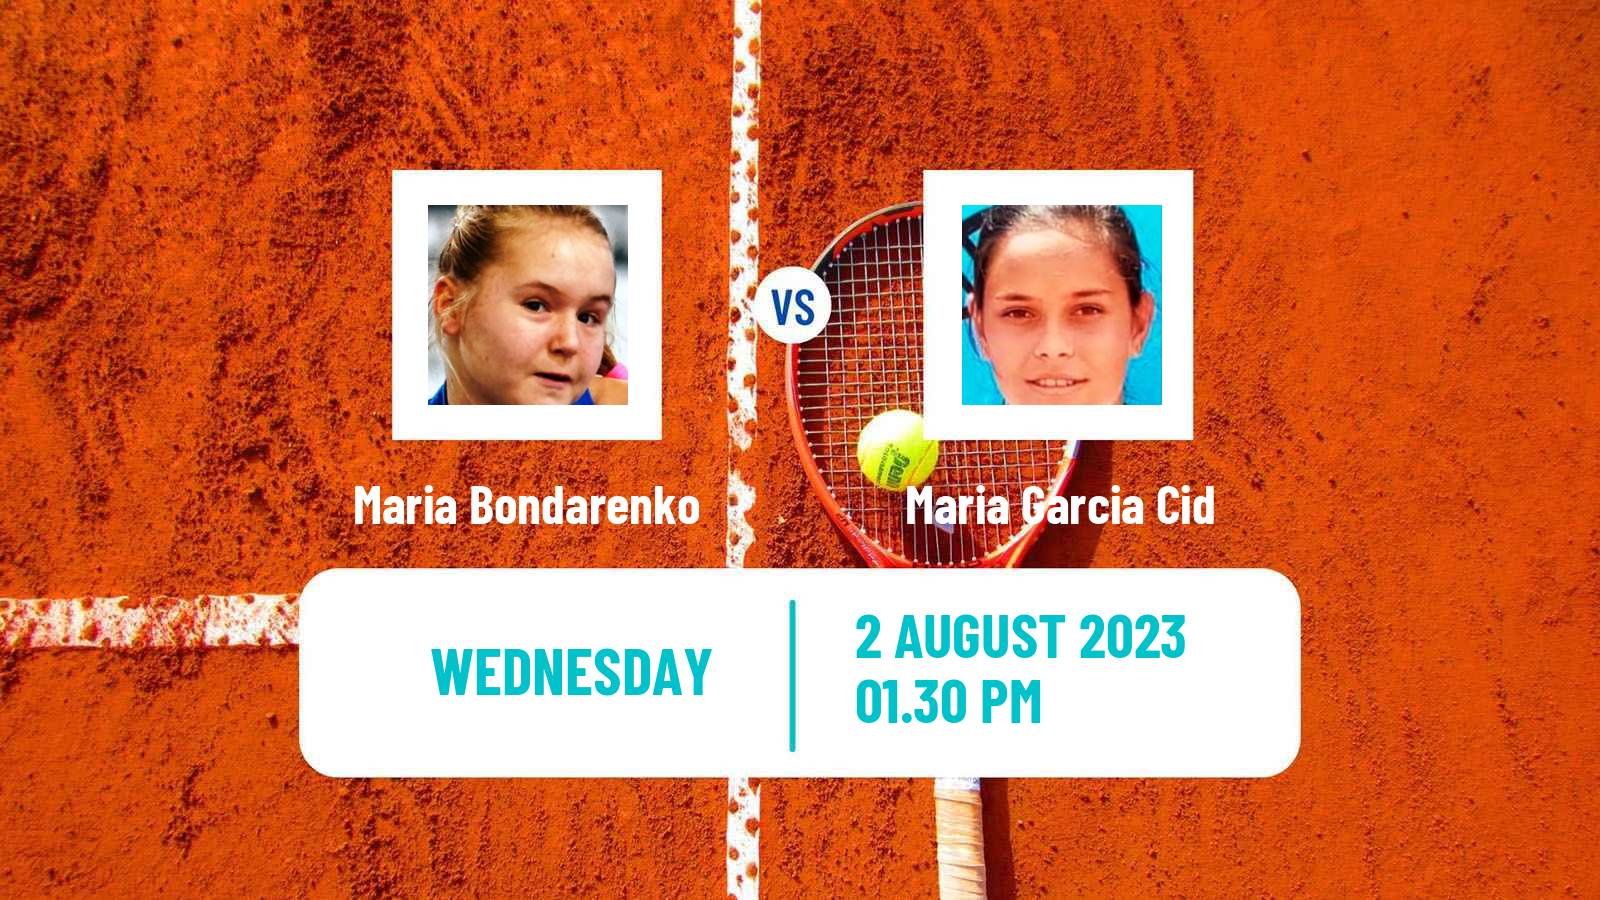 Tennis ITF W60 Barcelona Women Maria Bondarenko - Maria Garcia Cid